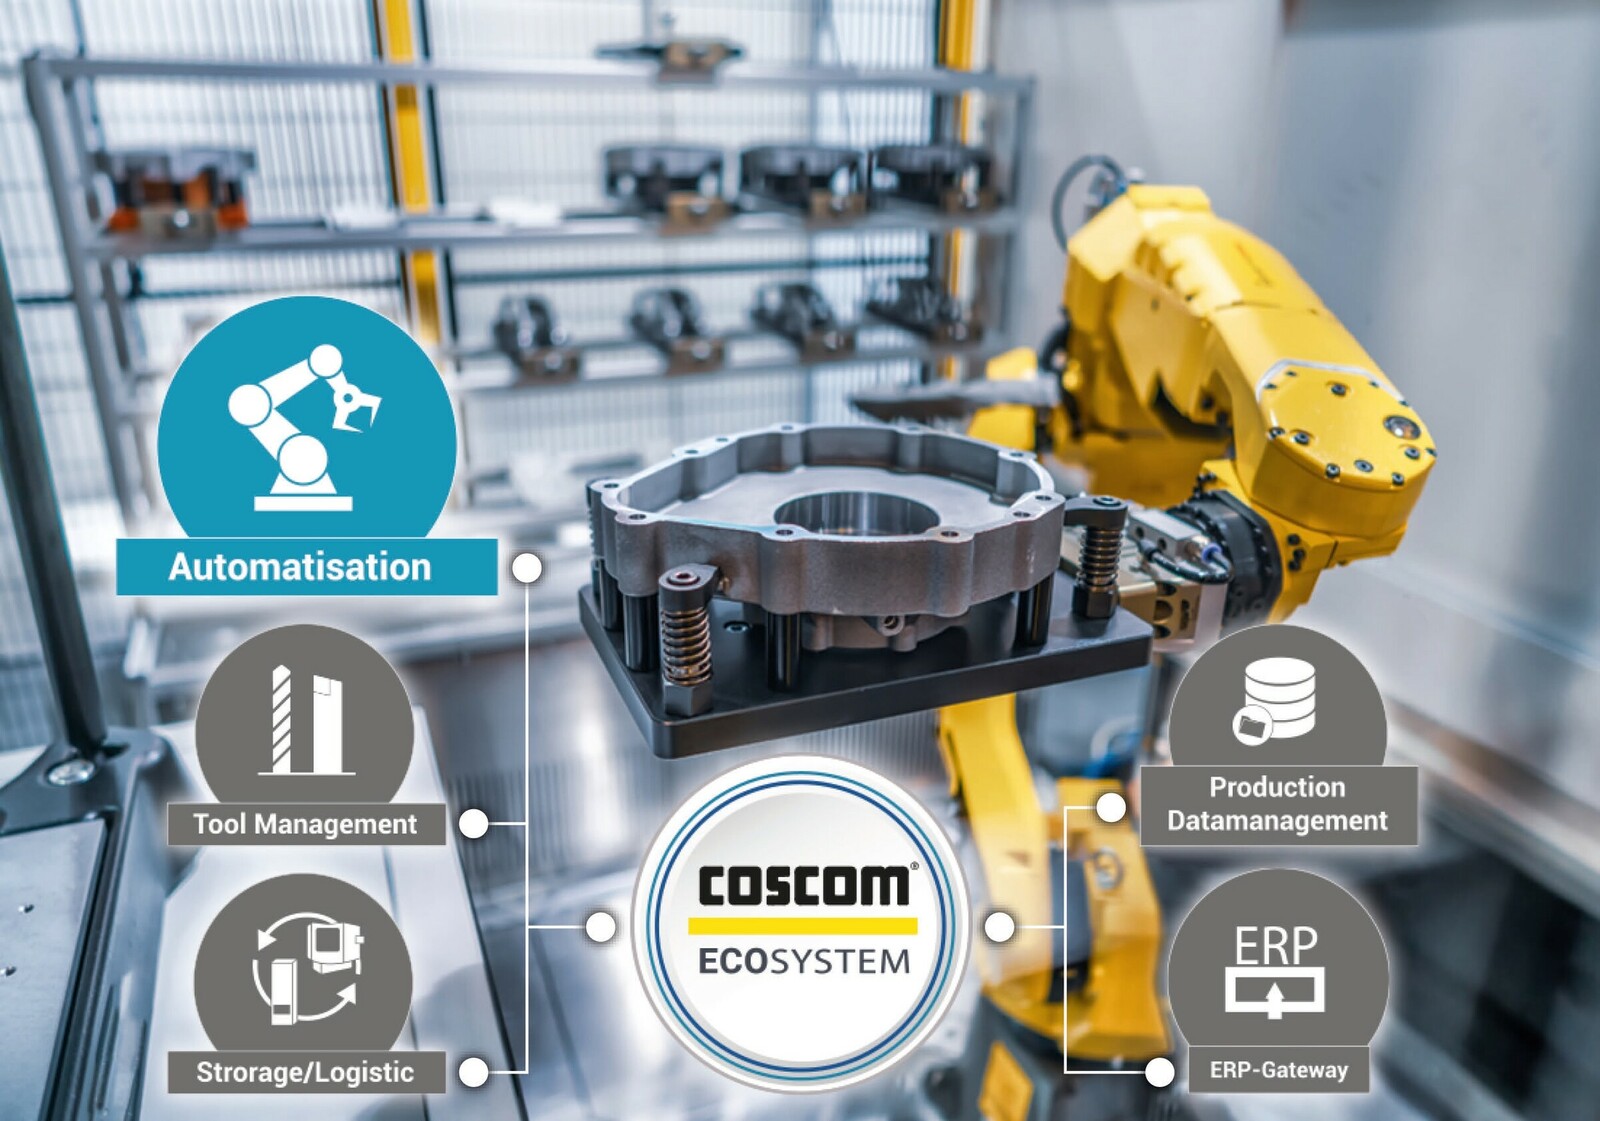  Das neue Coscom ECO-System Connected Shopfloor führt alle notwendigen Fertigungsdaten zentral zusammen und stellt Beziehungswissen gezielt am ‚Point of Action‘ zur Verfügung.